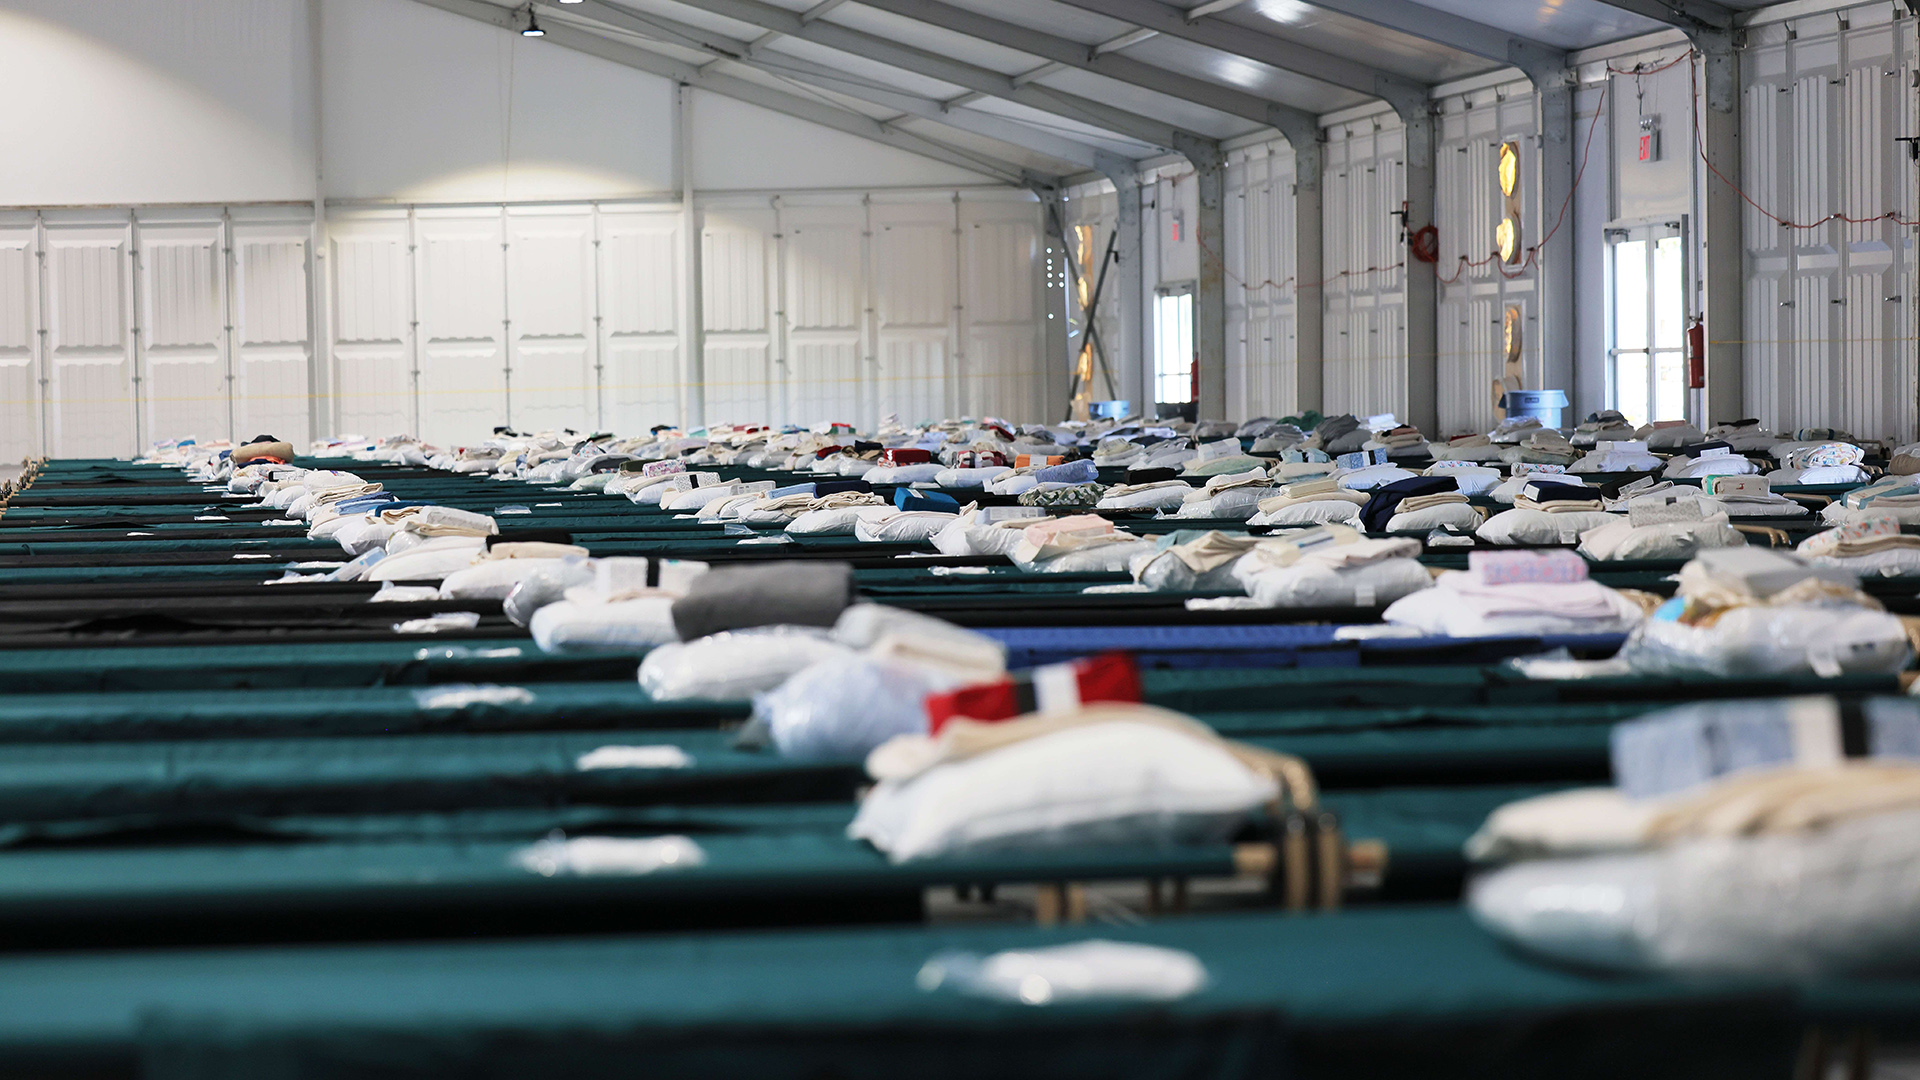 Betten im Schlafsaal einer Notunterkunft in New York, USA | AFP